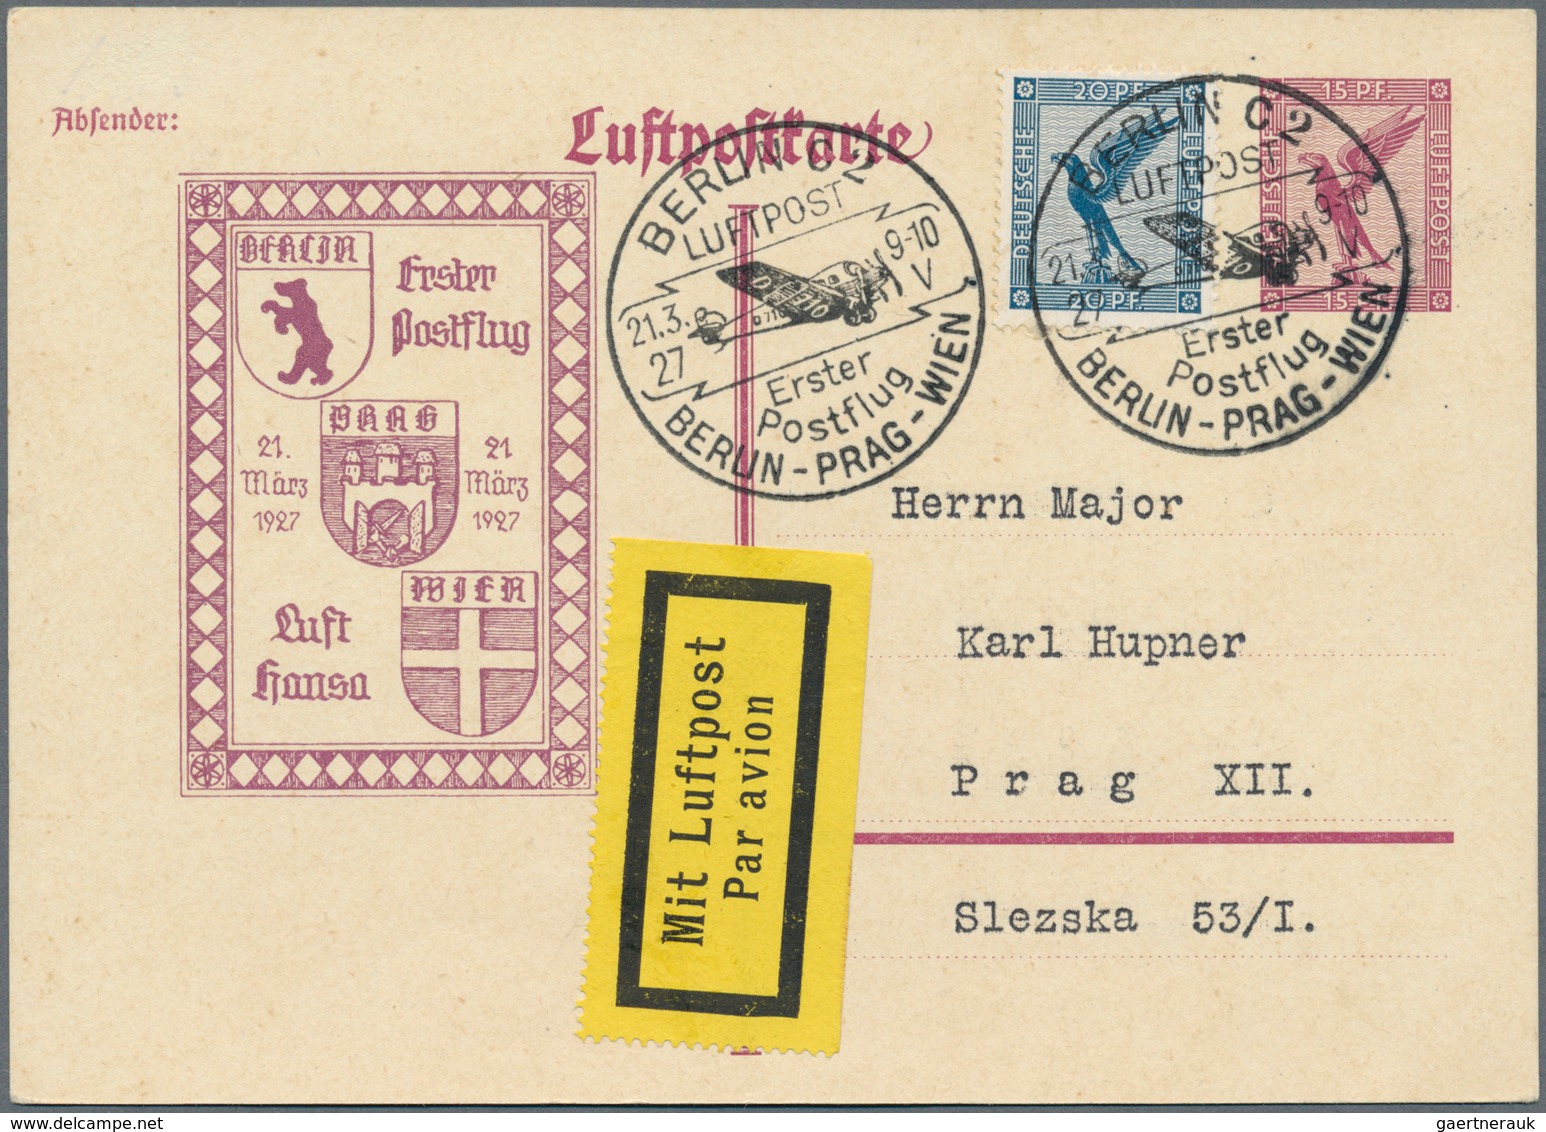 Deutsches Reich - Privatganzsachen: 1927, 15 Pf Steinadler, komplette Serie mit 4 Postkarten mit pri